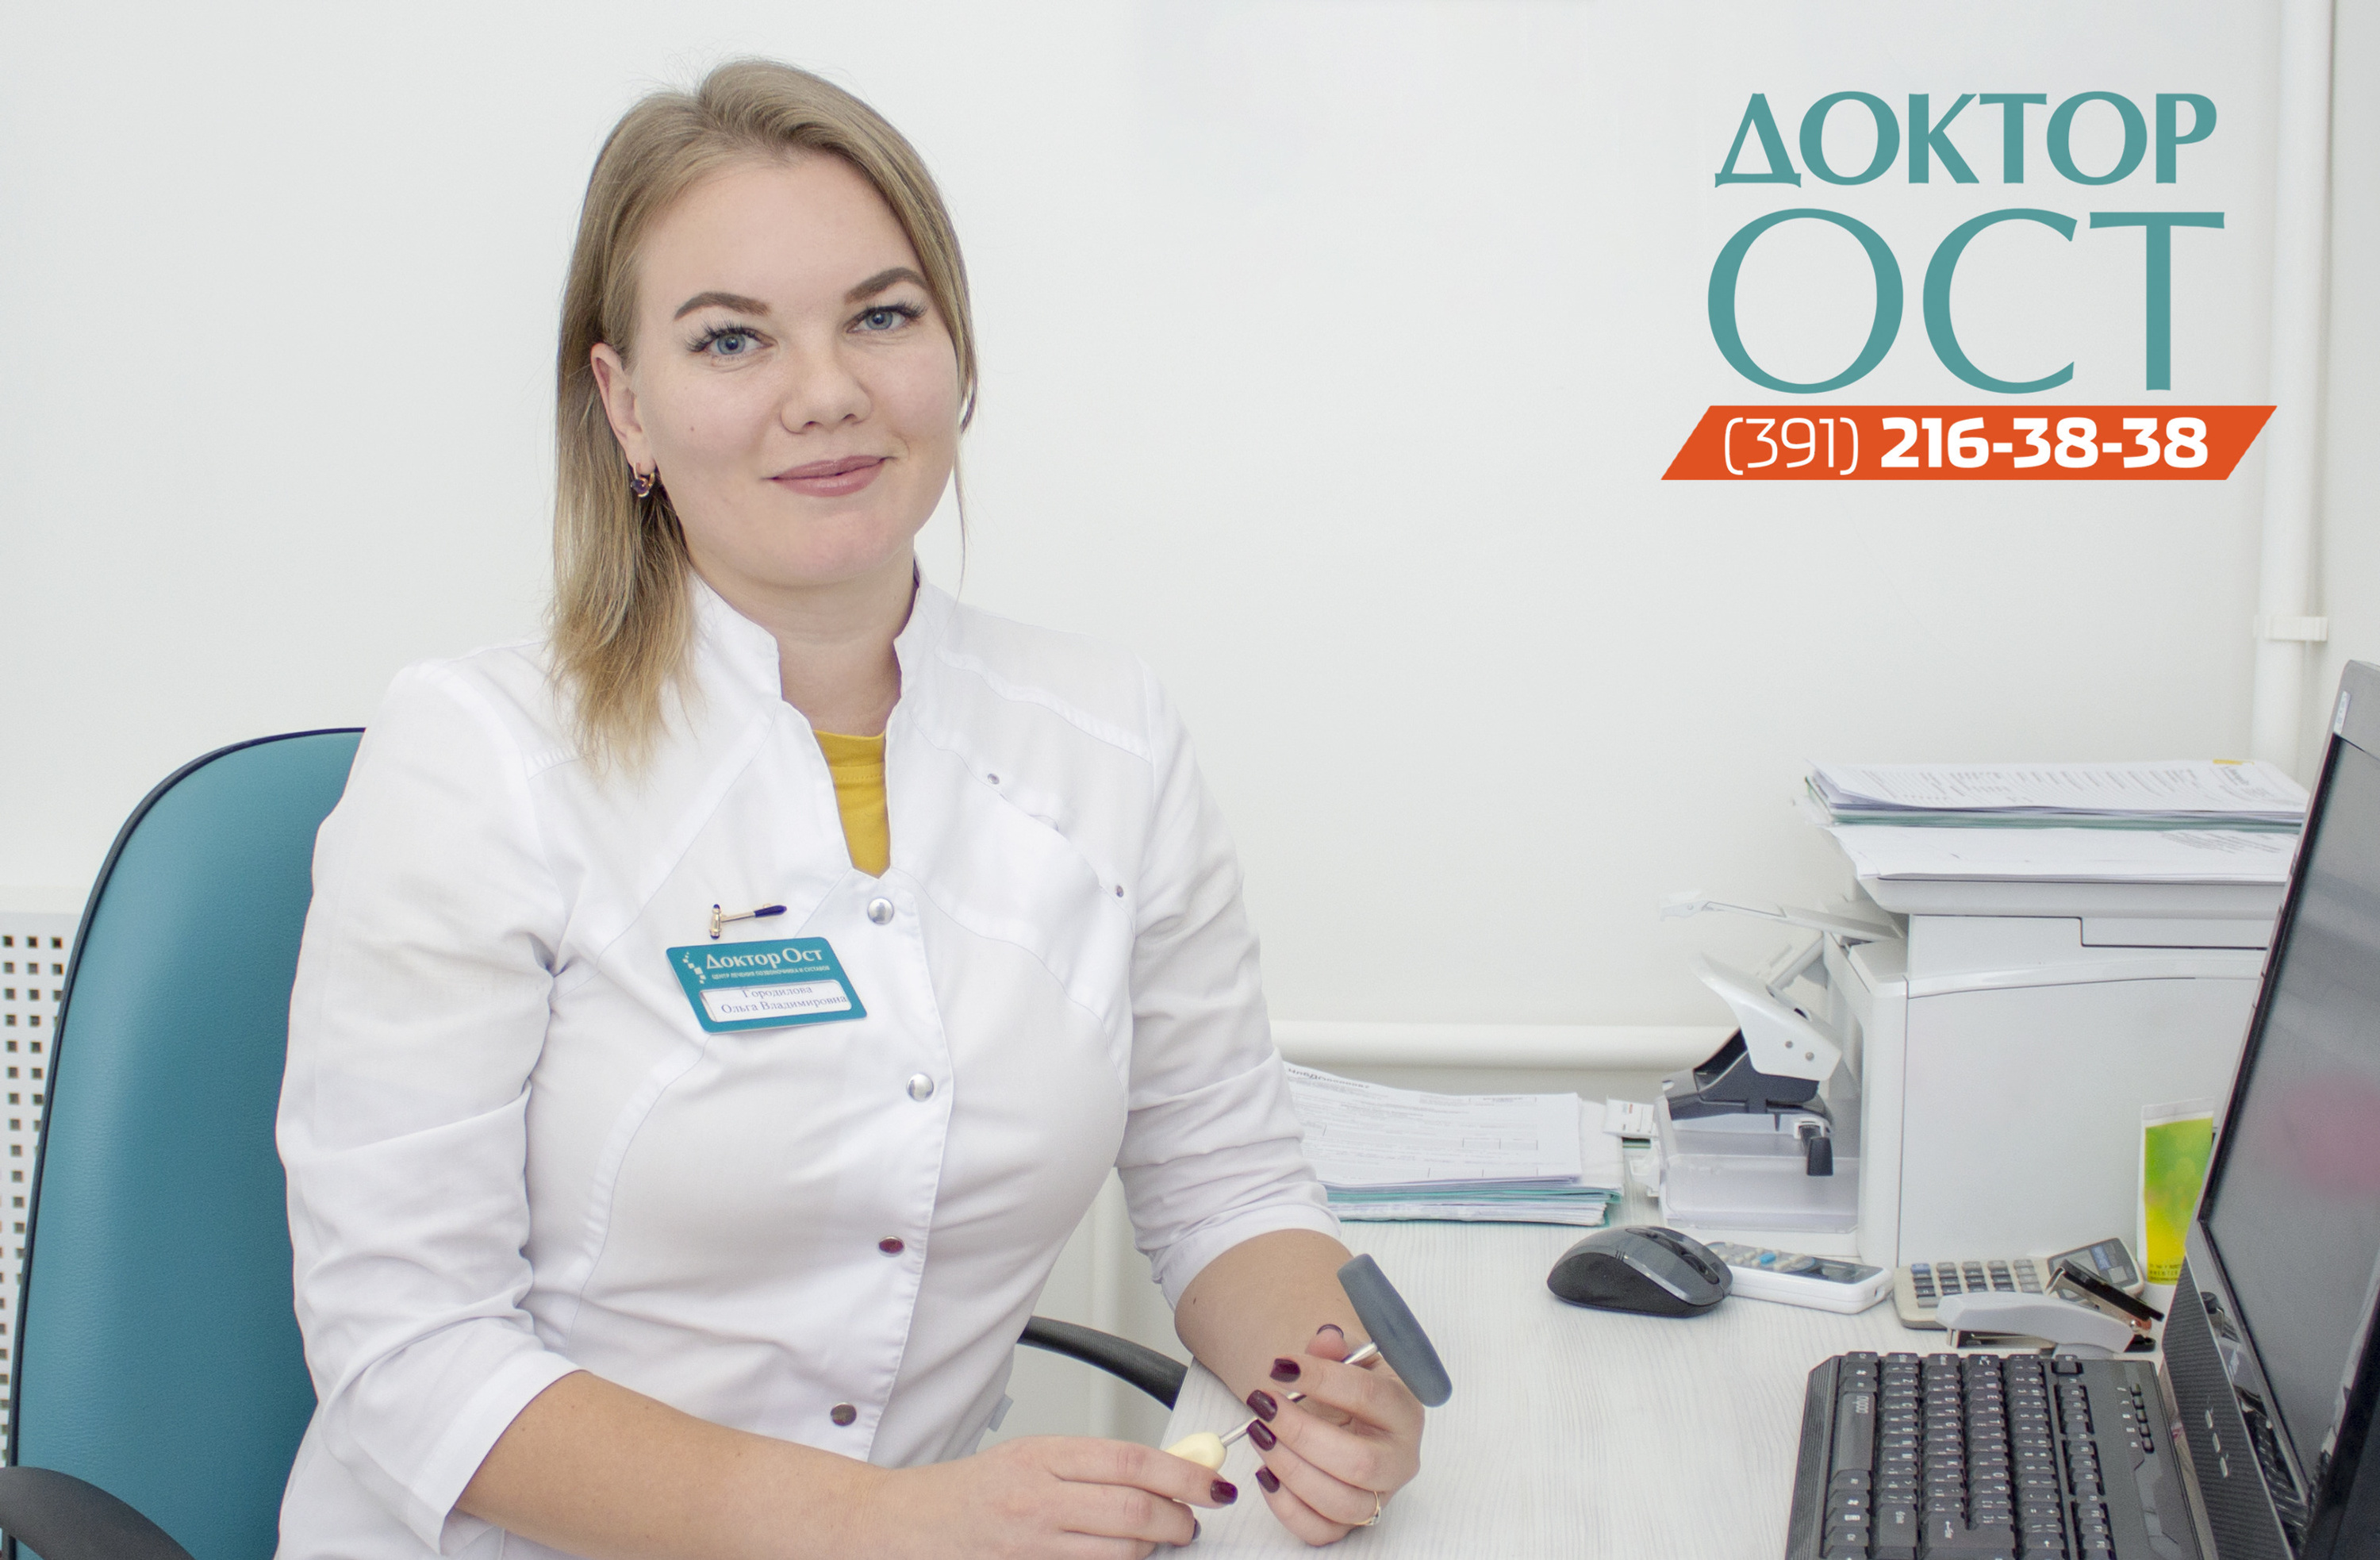 Ольга Городилова, невролог со стажем, прошла дополнительное специальное обучение и имеет сертификаты Международной школы Восточной медицины